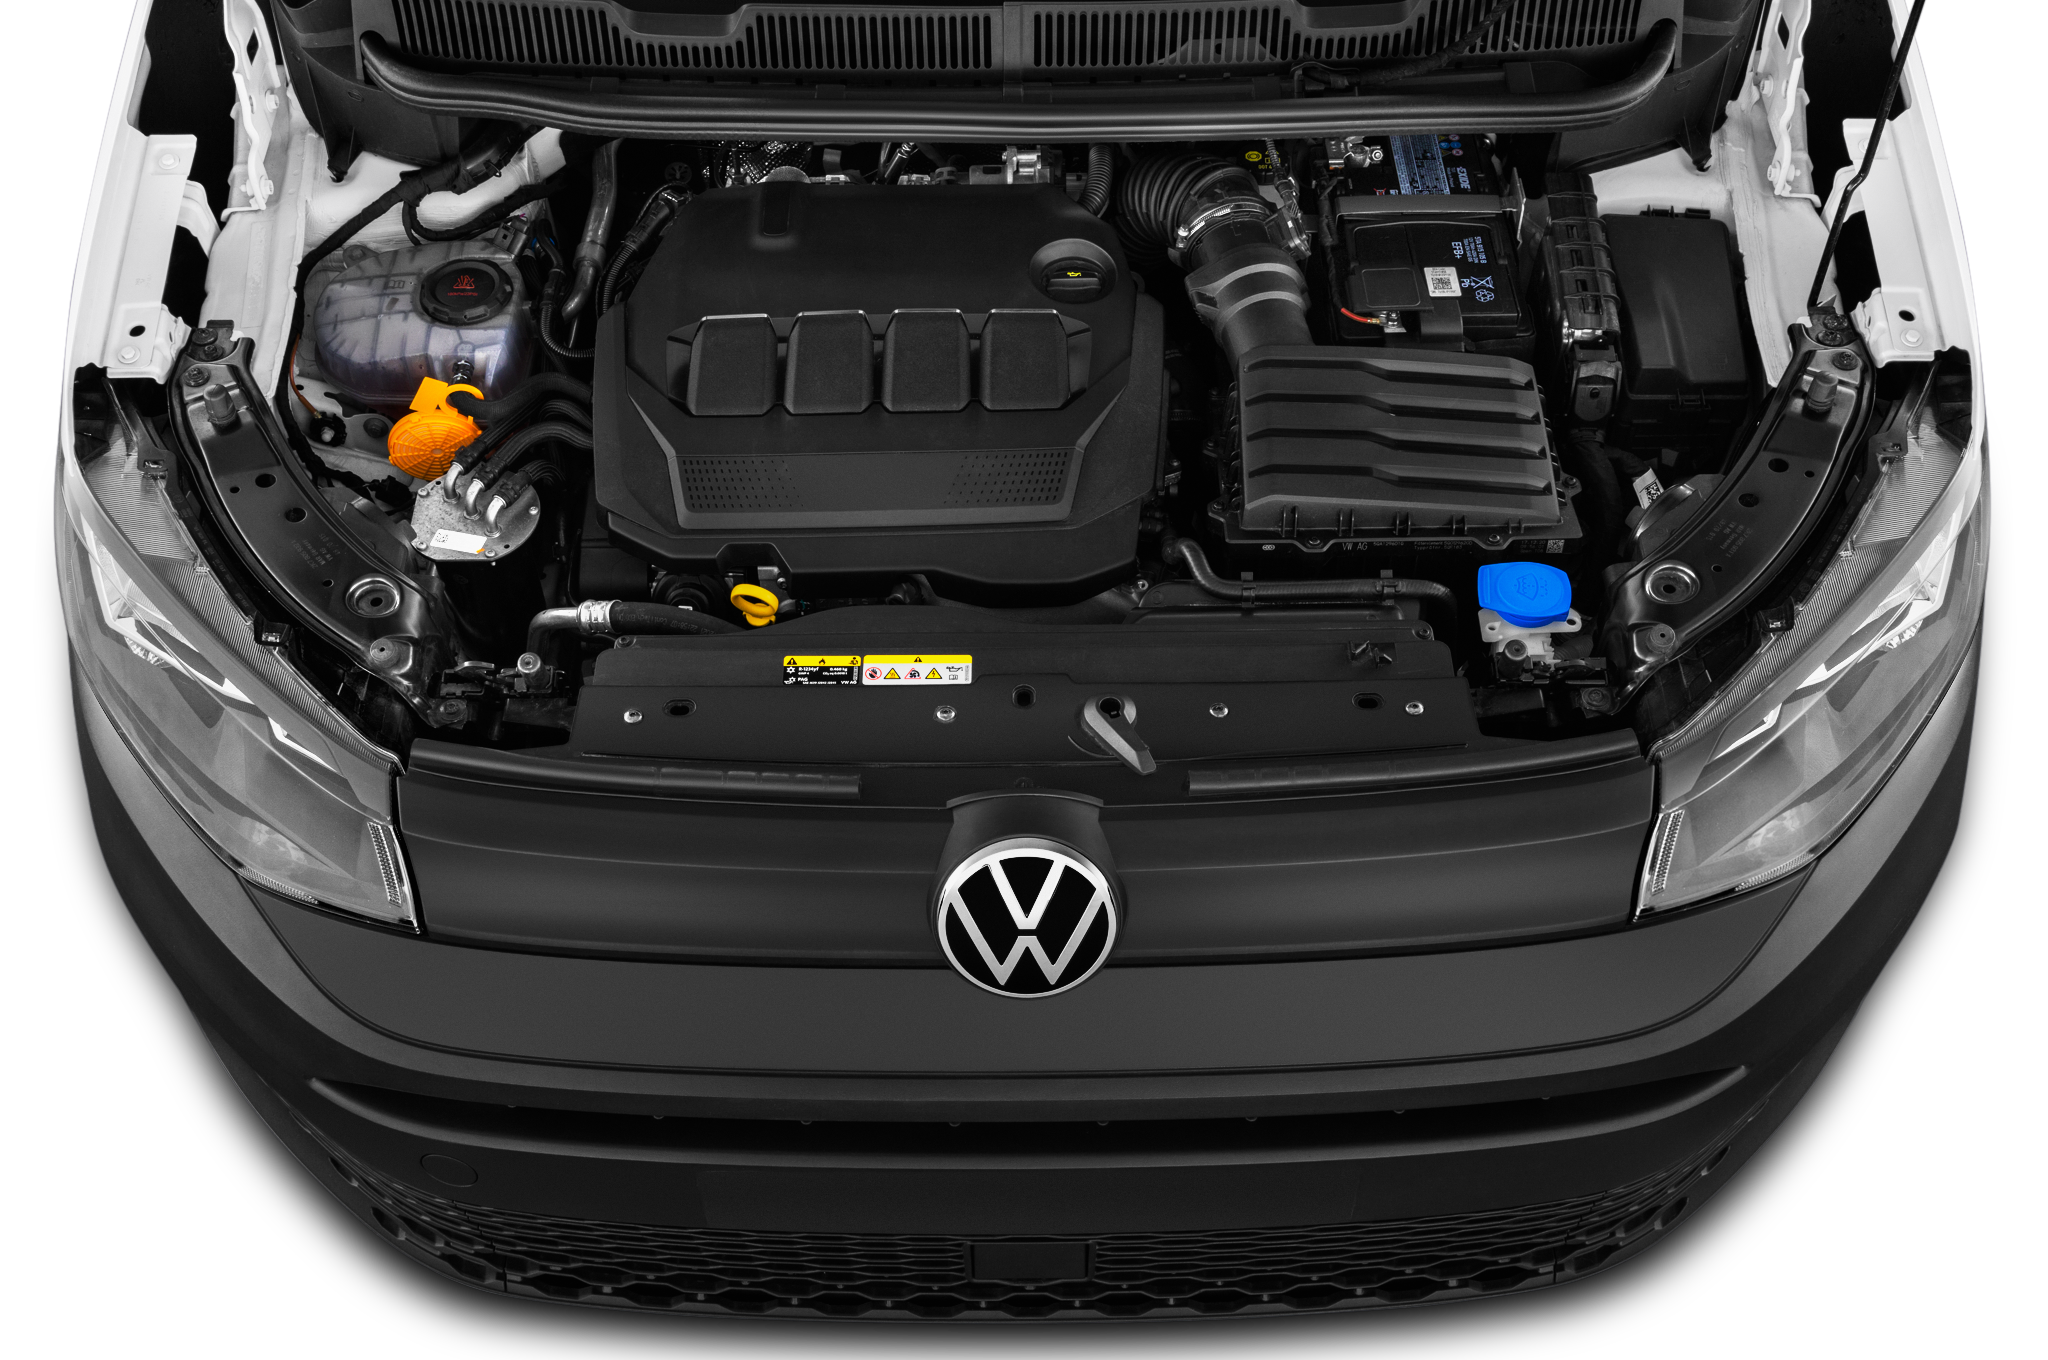 Volkswagen Caddy Cargo (Baujahr 2021) Maxi Regular Cab 4 Türen Motor